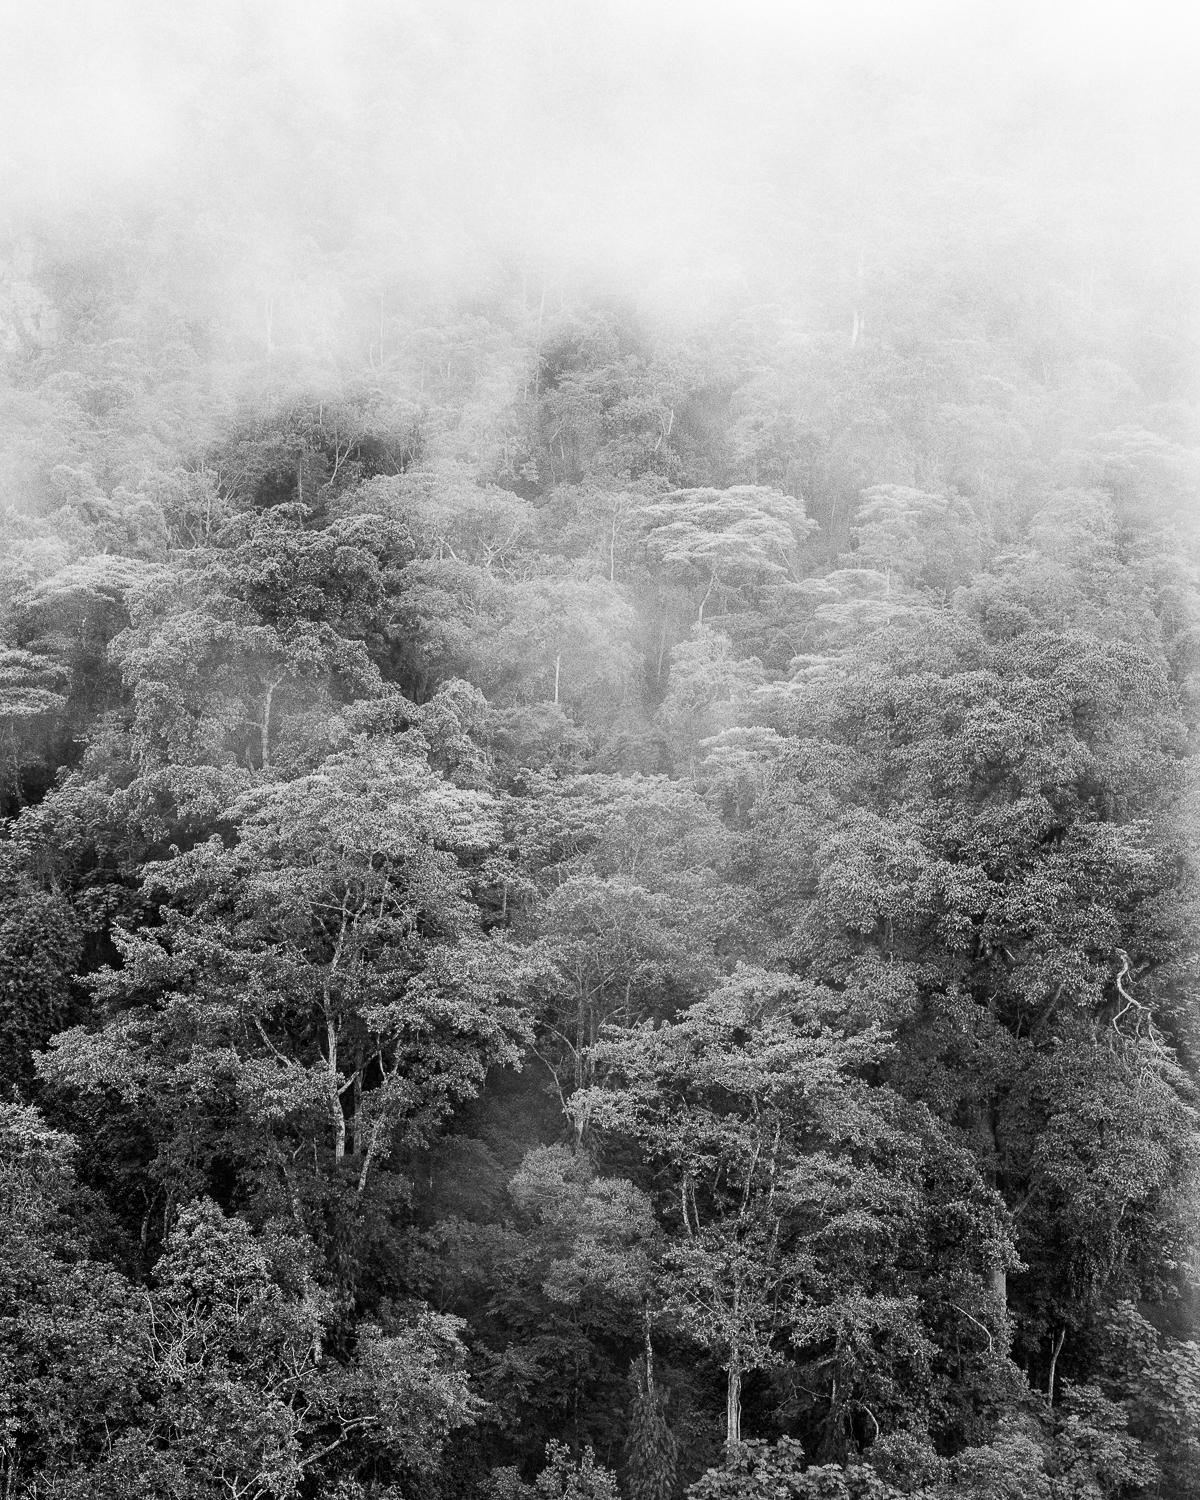 Black and White Photograph Miguel Winograd  - Bosque de niebla II Chicaque, imprimés pigmentaires